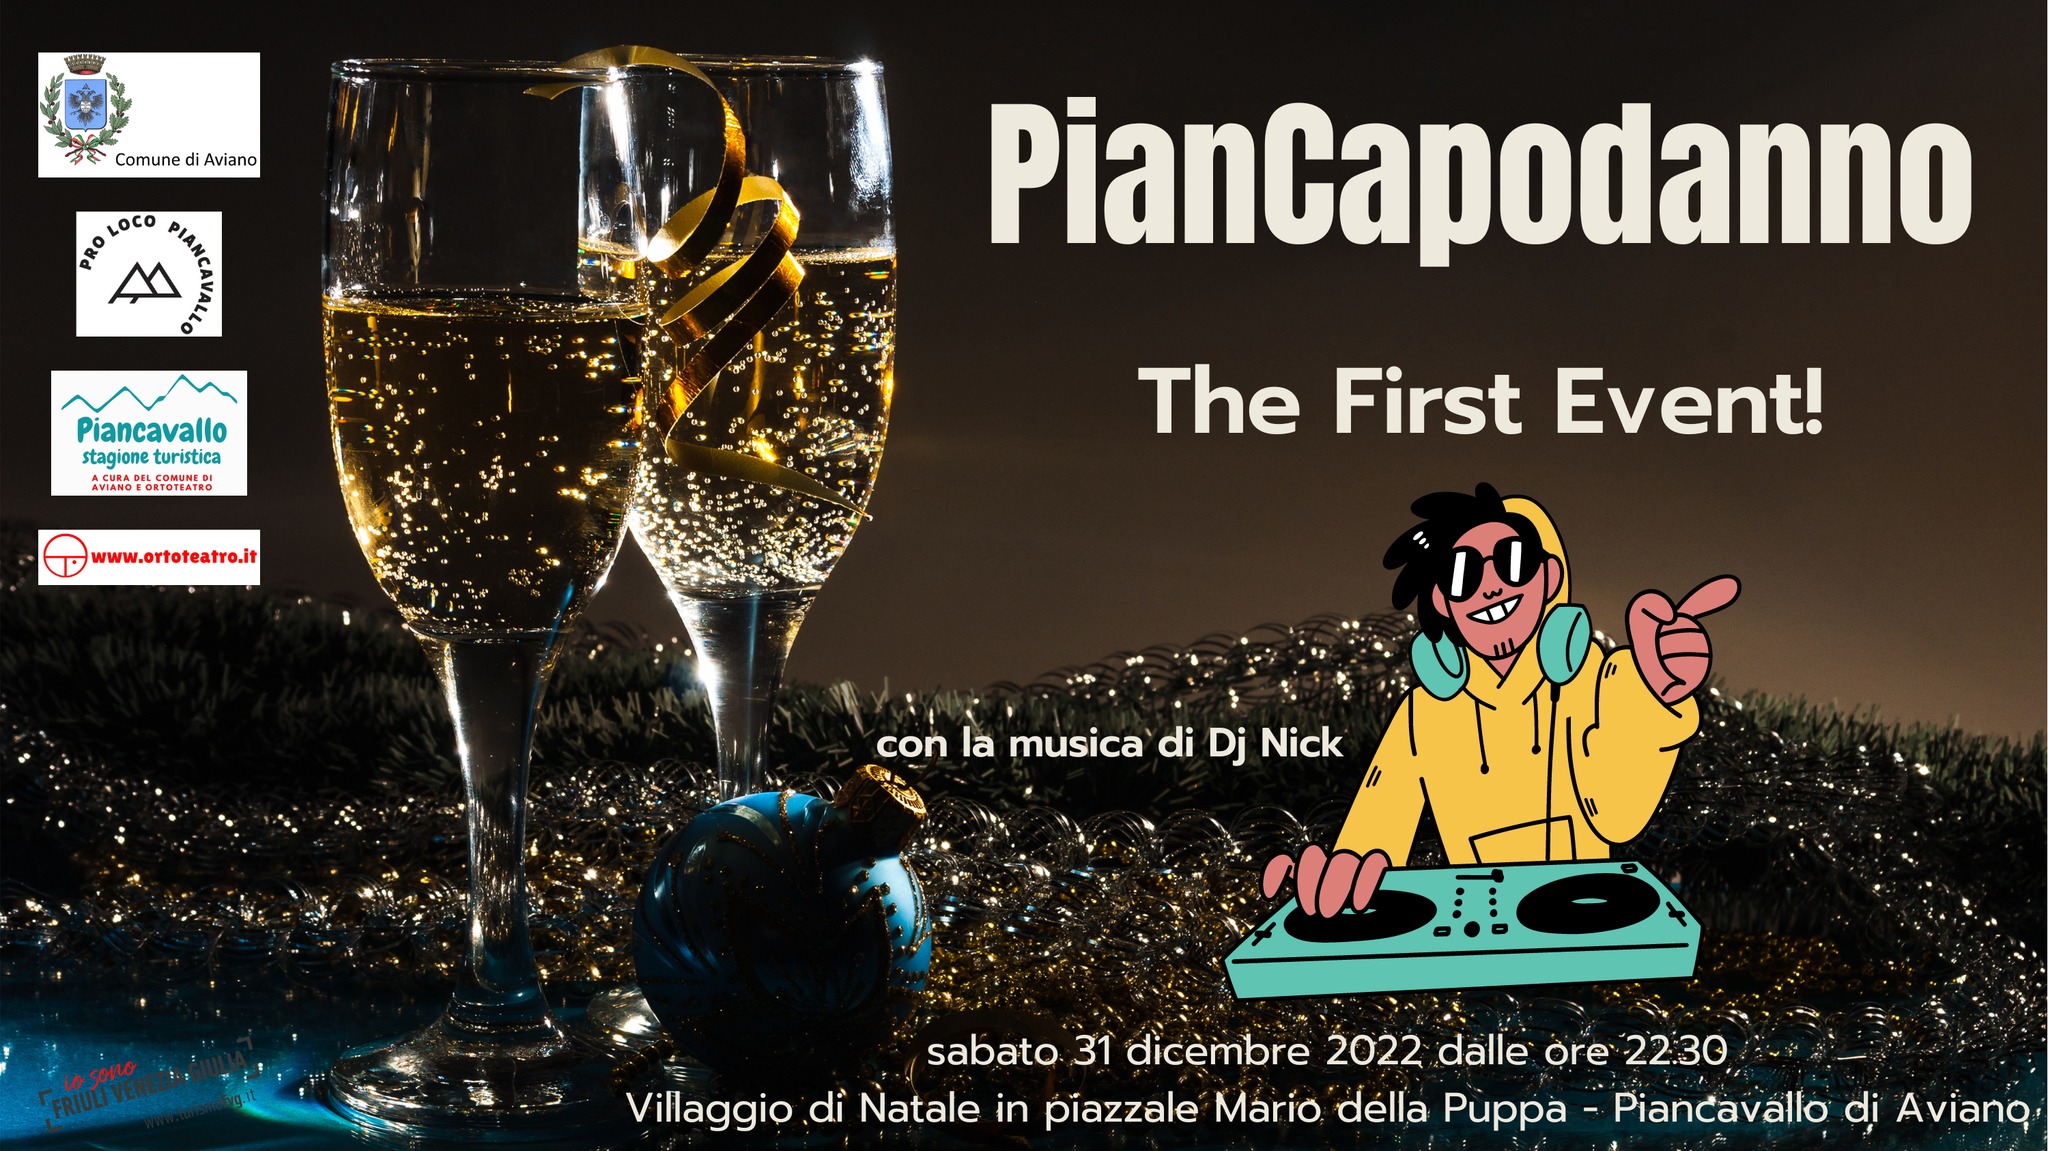 PianCapodanno. The First Event